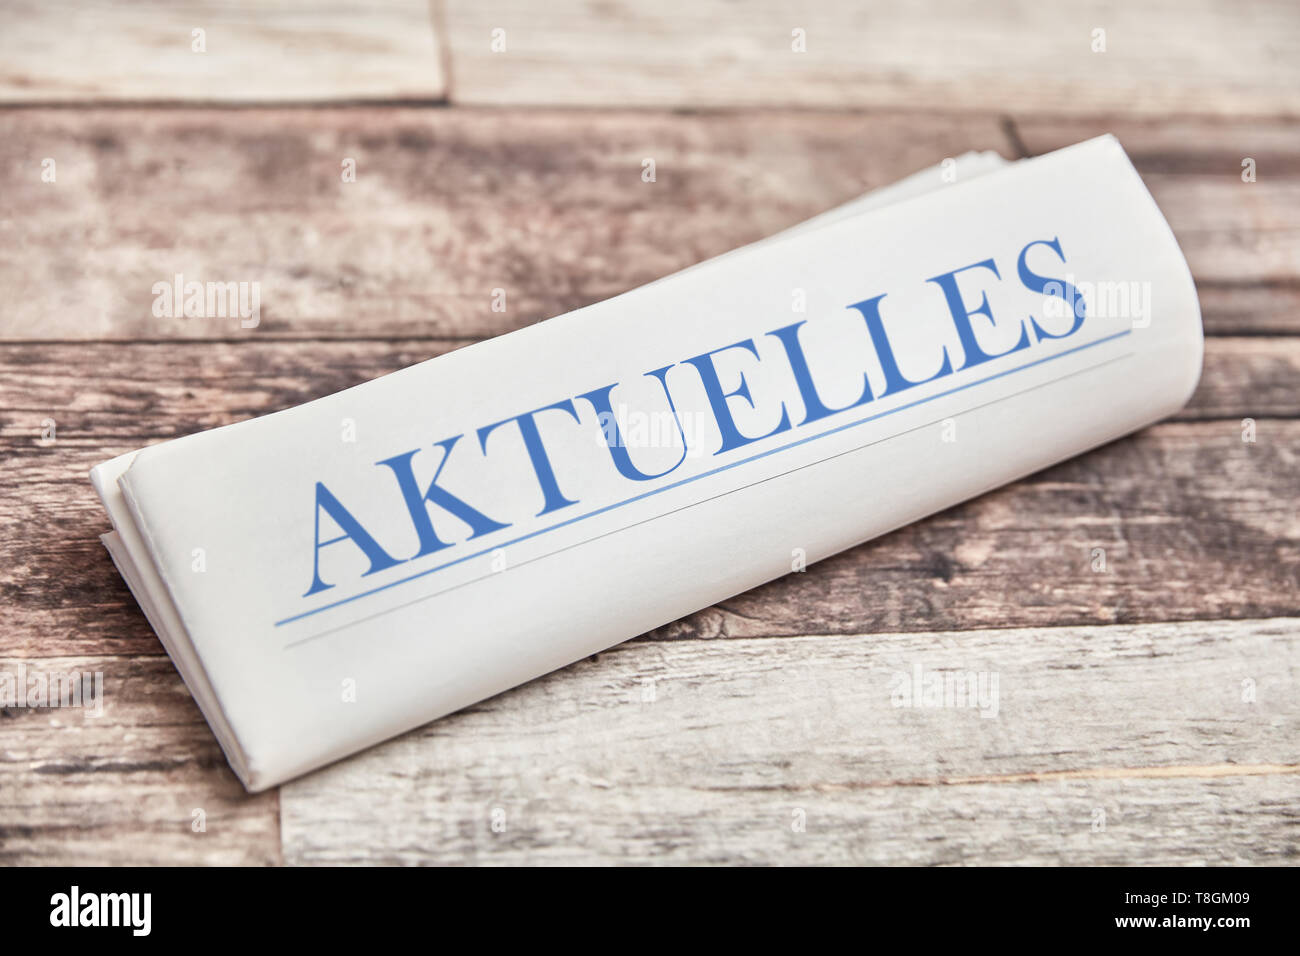 German word 'Aktuelles' (news) in newspaper on wood Stock Photo